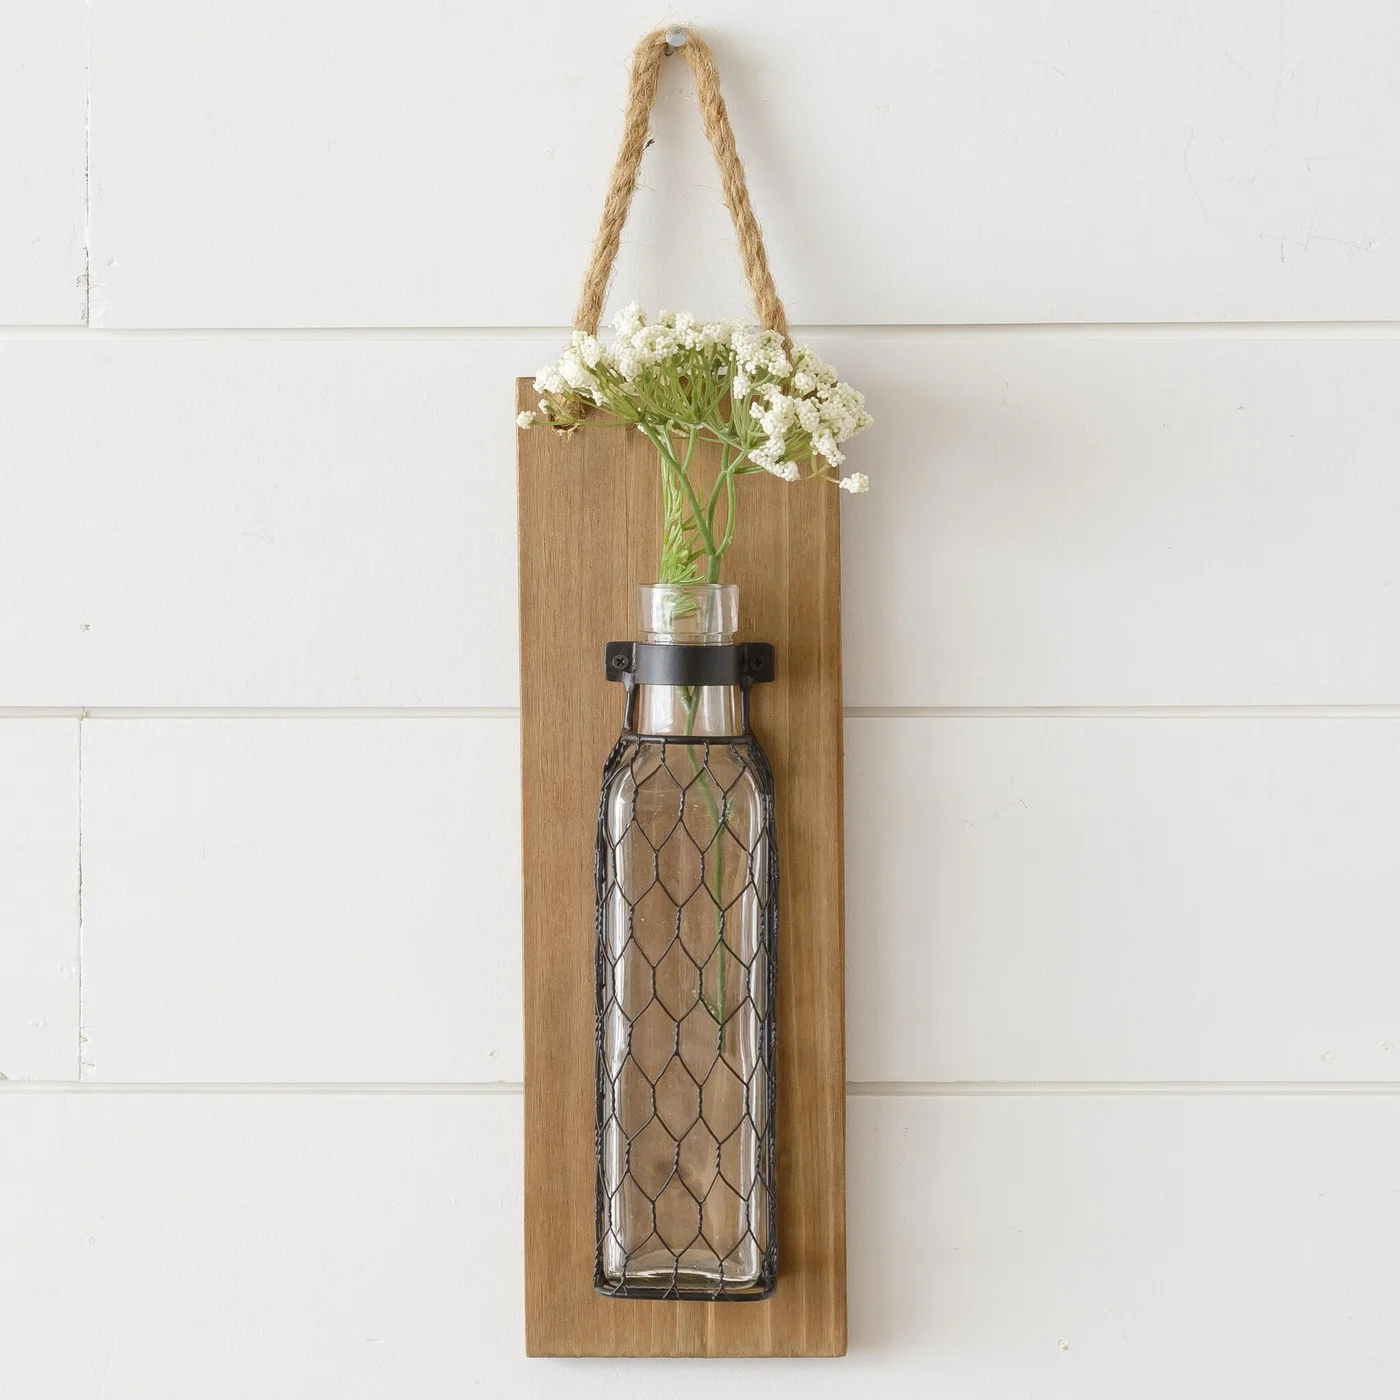 💙 Rustic Hanging Flower Vase On Wood